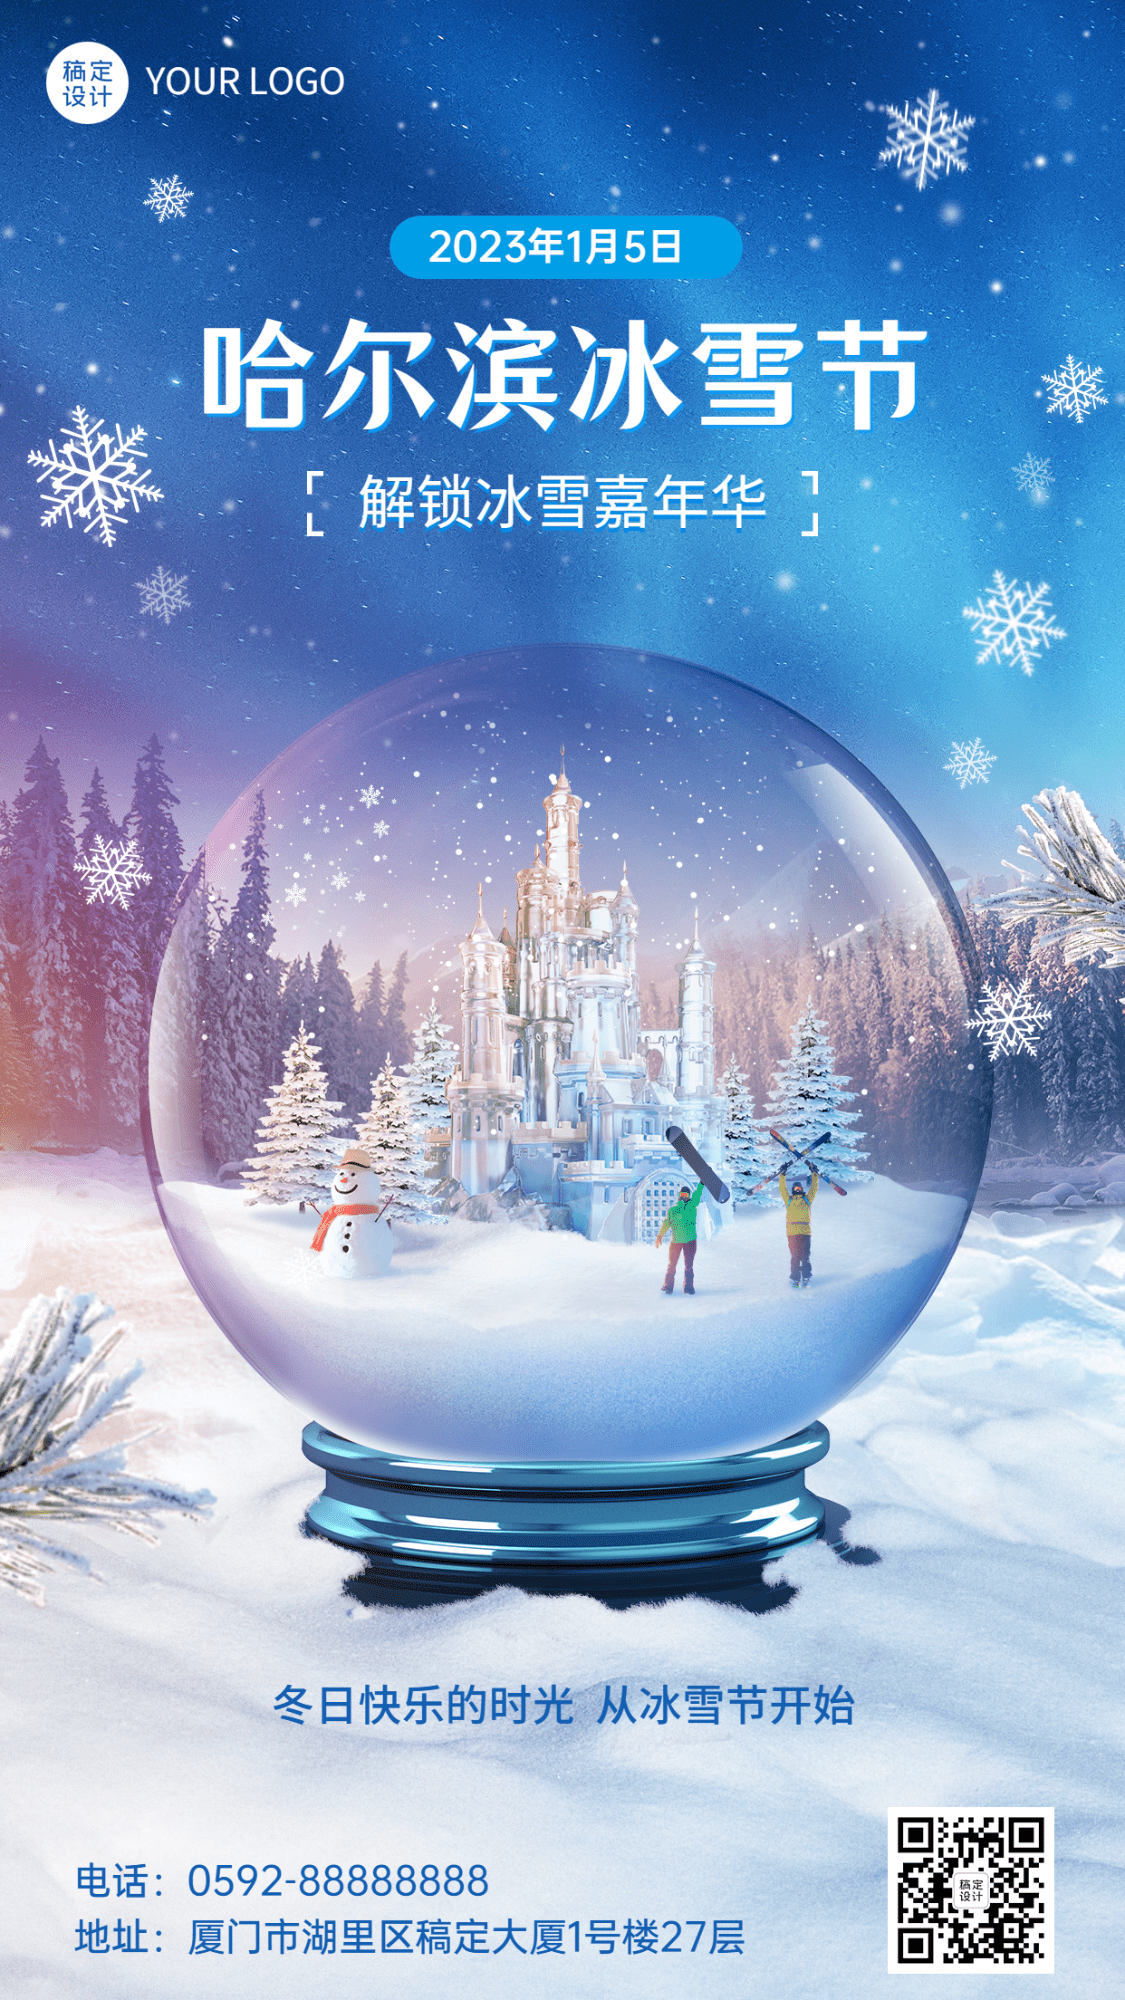 哈尔滨国际冰雪节活动实景手机海报预览效果